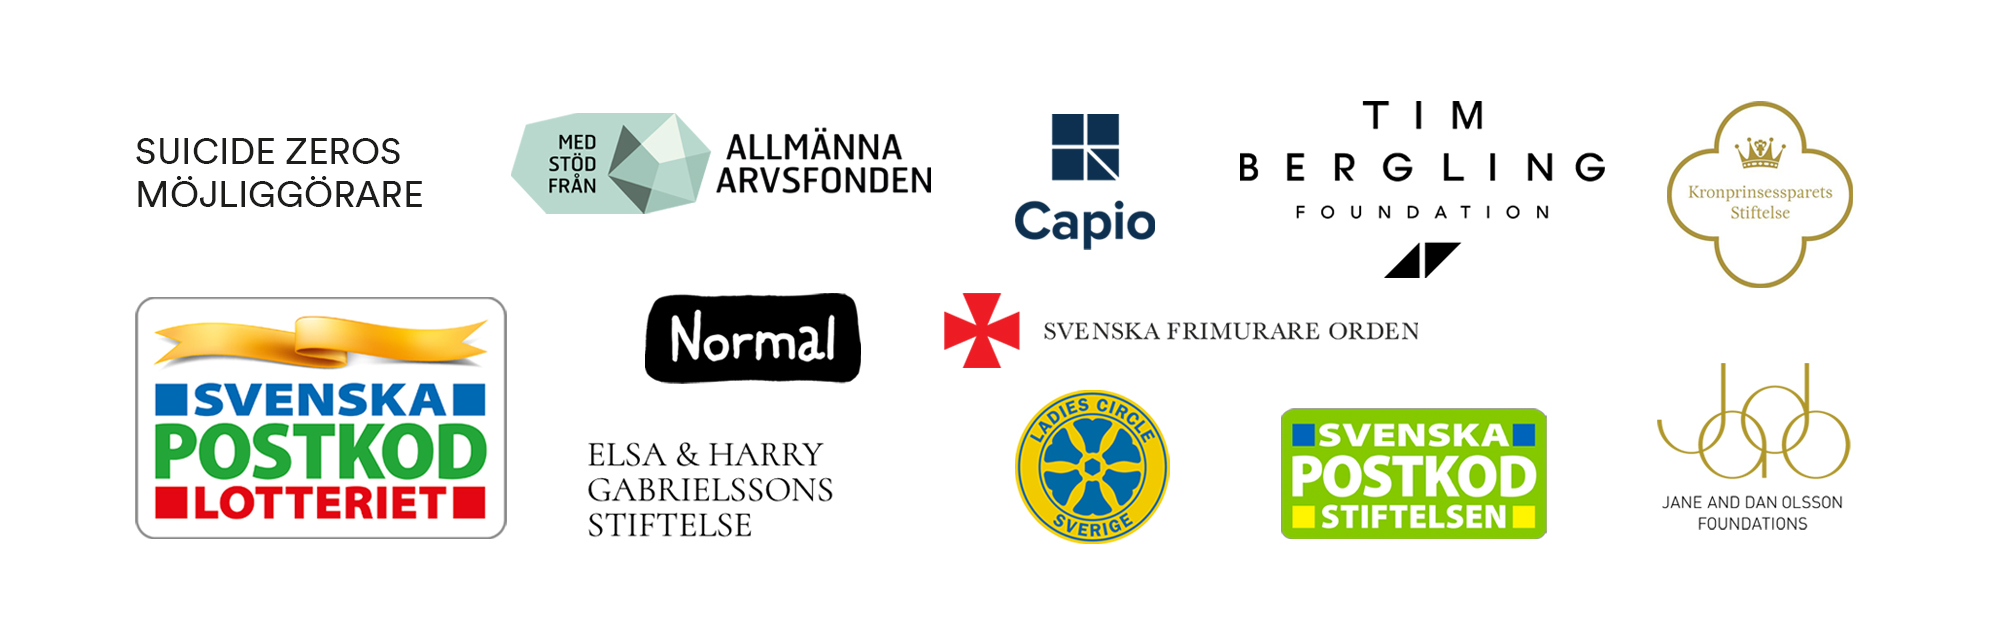 Logotyper på företag som stöttar Suicide Zero